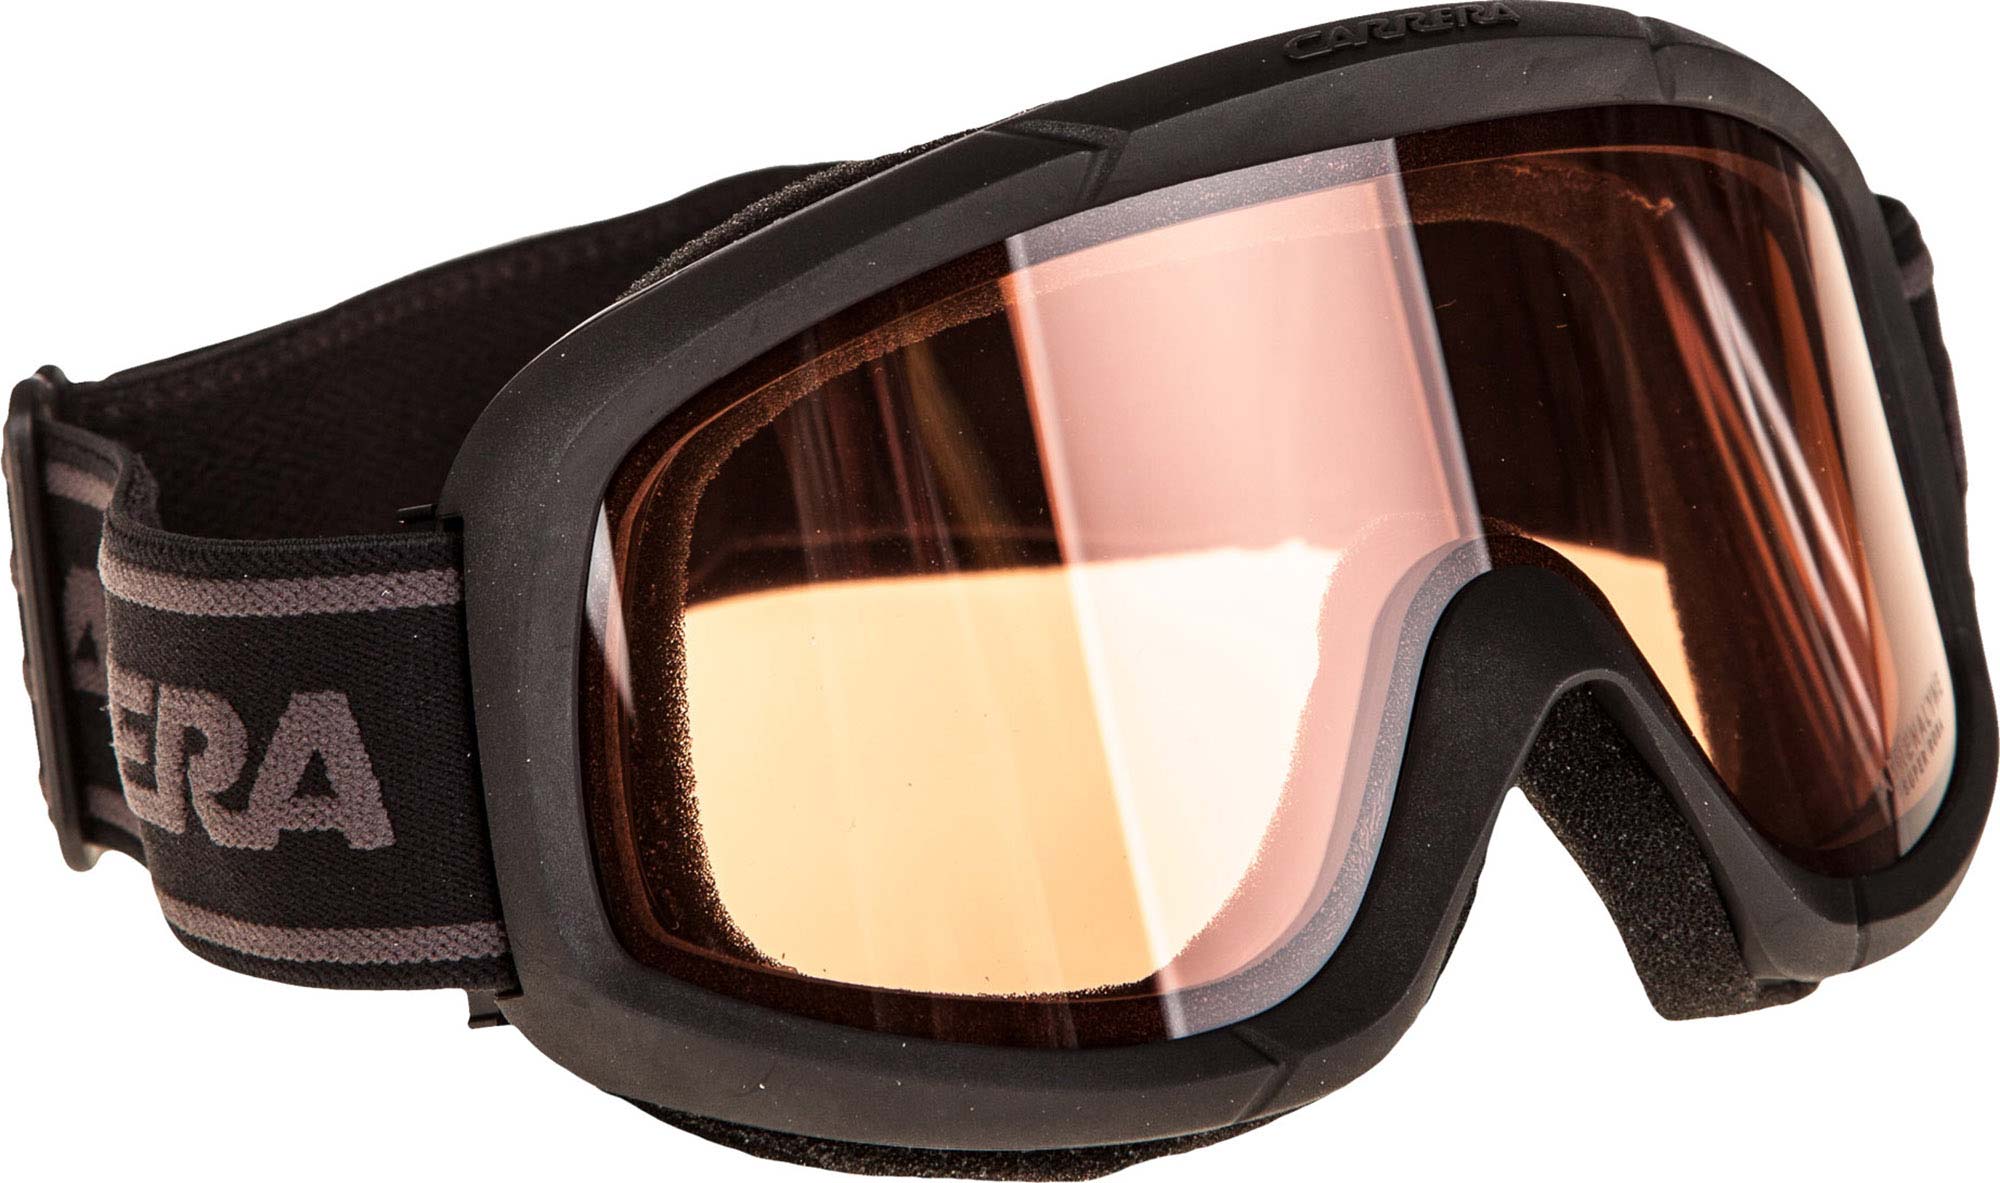 Alpine Ski Goggles